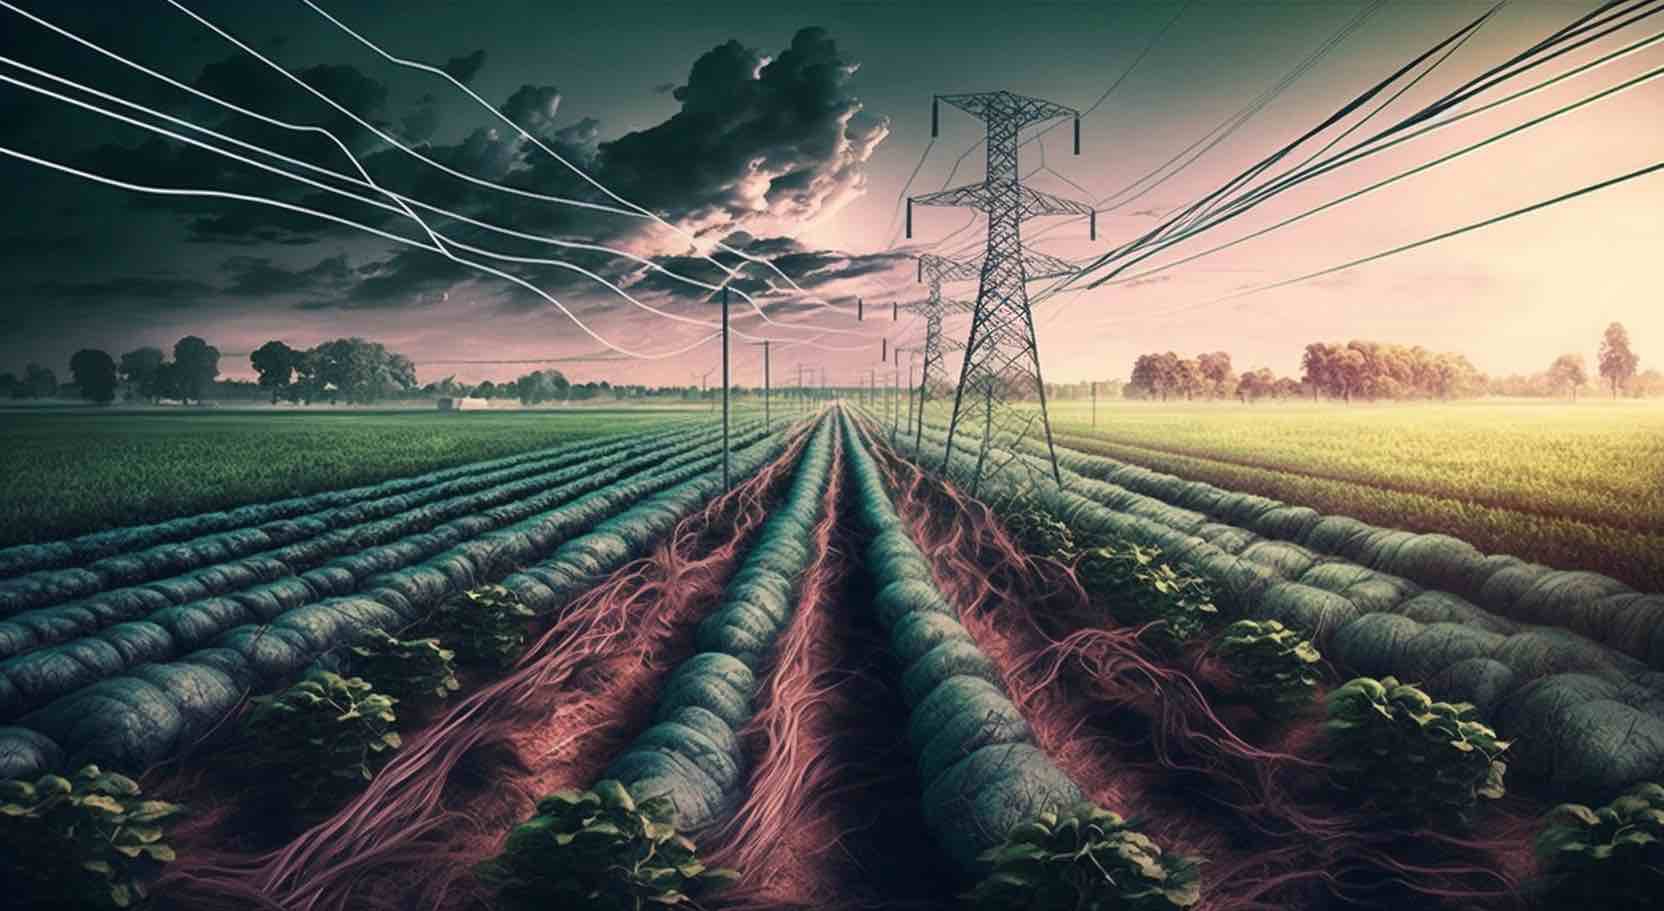 Electro Culture Farming: een revolutionaire methode voor hogere opbrengsten en duurzaamheid?